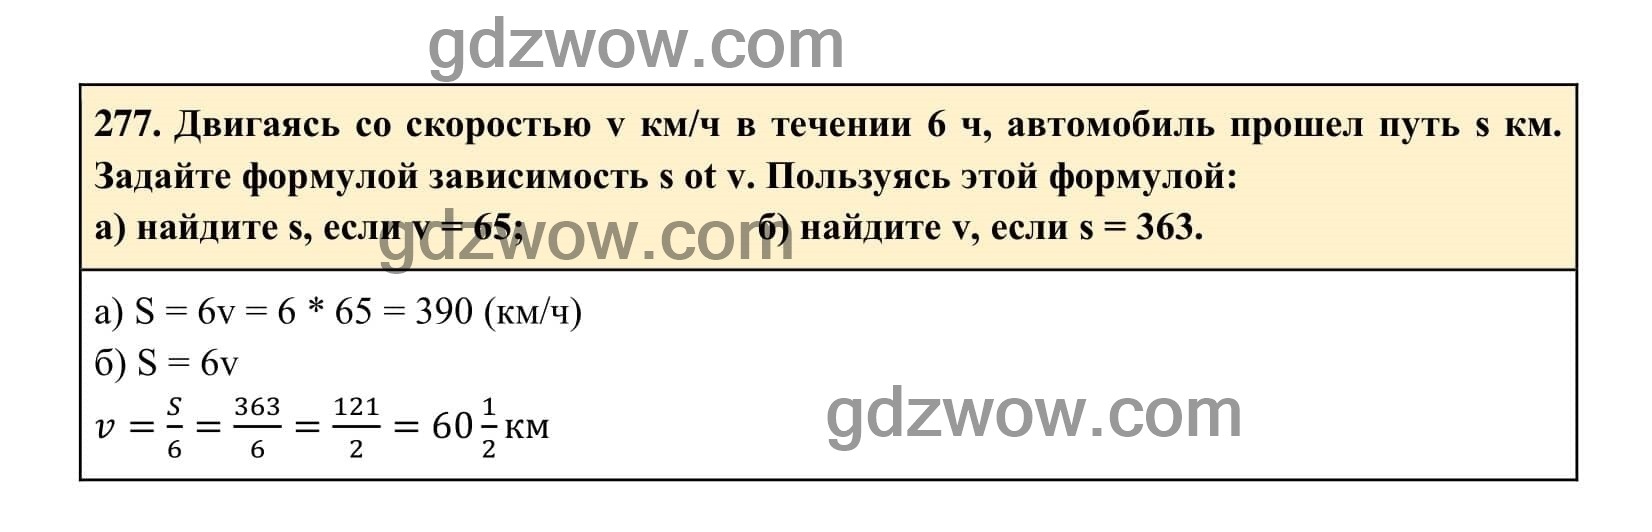 Упражнение 277 - ГДЗ по Алгебре 7 класс Учебник Макарычев (решебник) - GDZwow